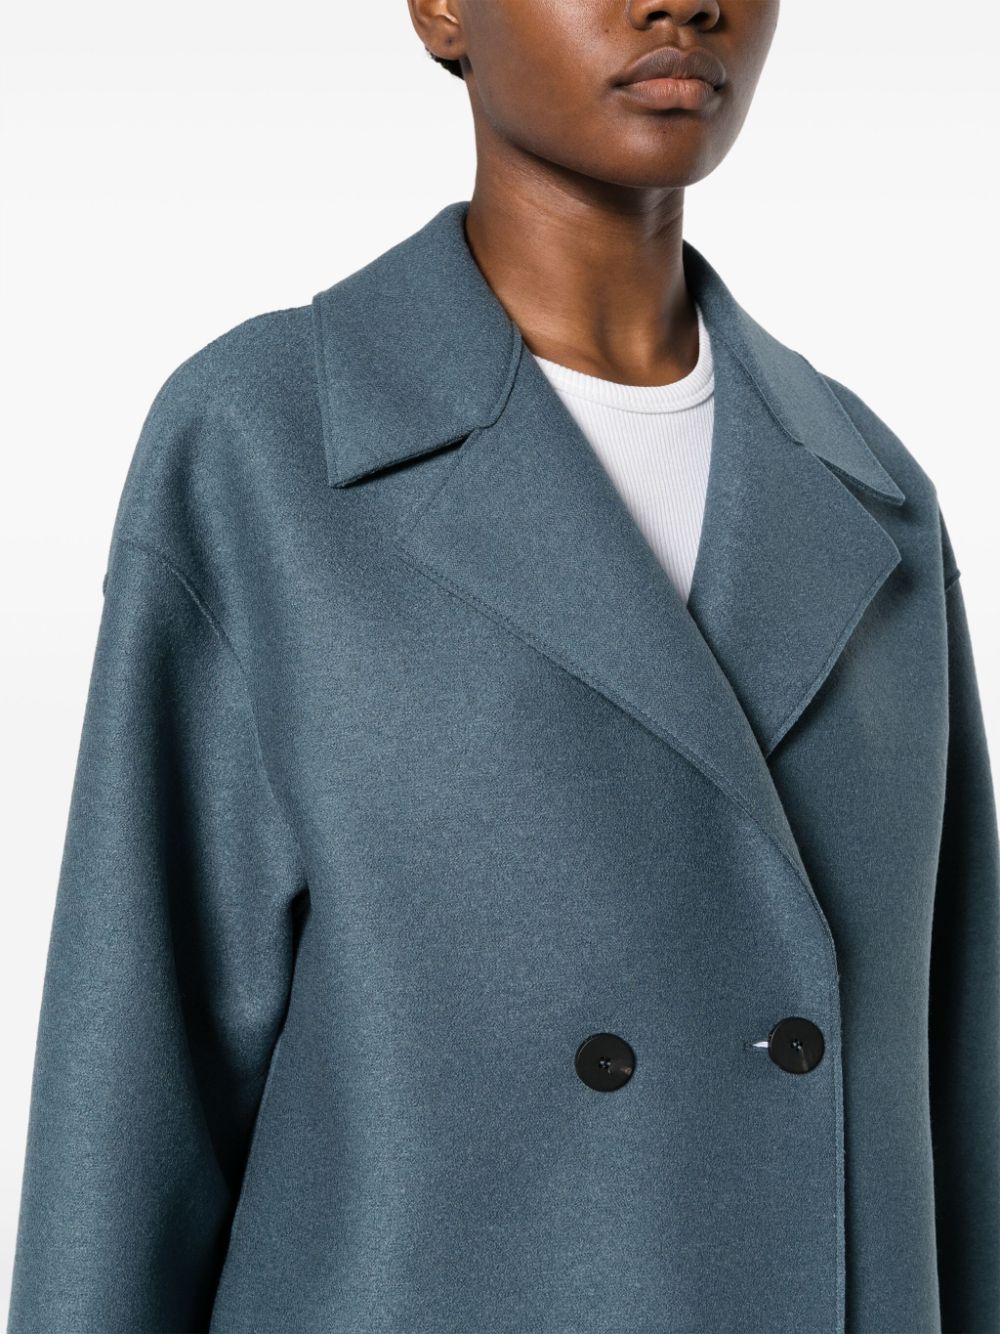 Women dropped shoulder d.b. coat pressed wool, steel blue